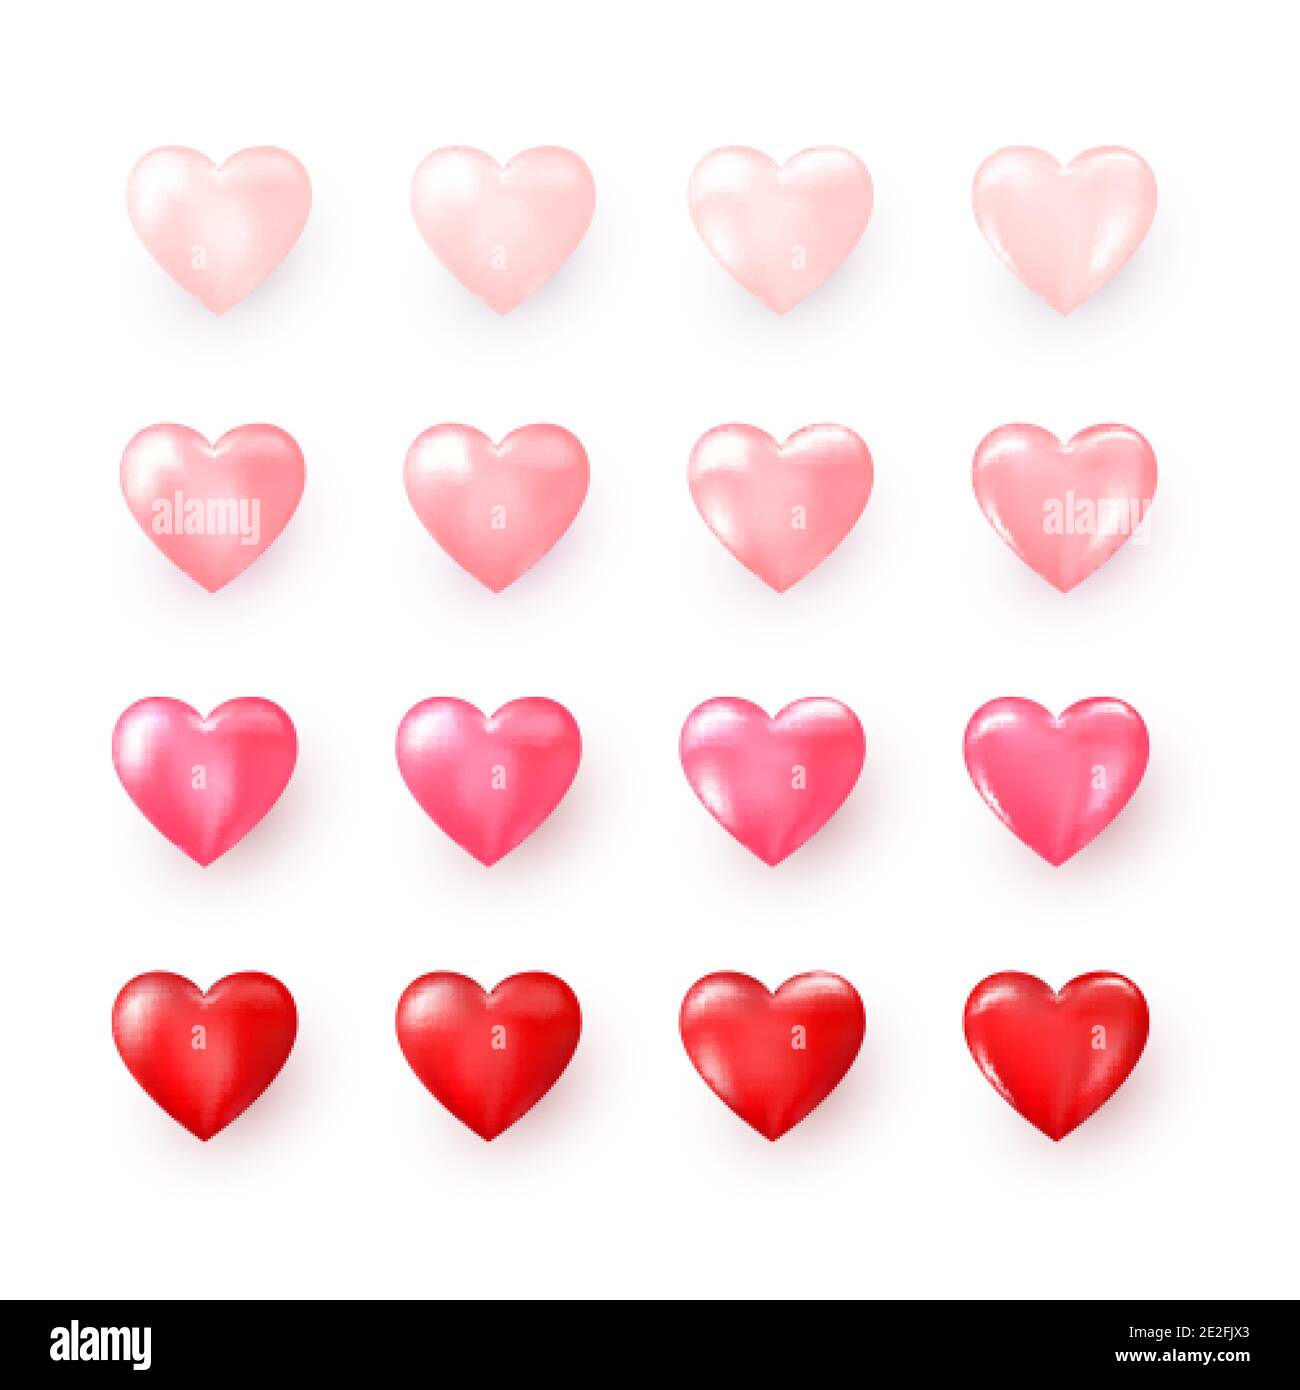 Conjunto de corazon decorativos rojos y rosas colecciãn de corazon tilizados para decoraciãn de boda o tarjeta de felicitaciãn el dãa de san valentãn u otras plantillas abstra imagen vector de stock